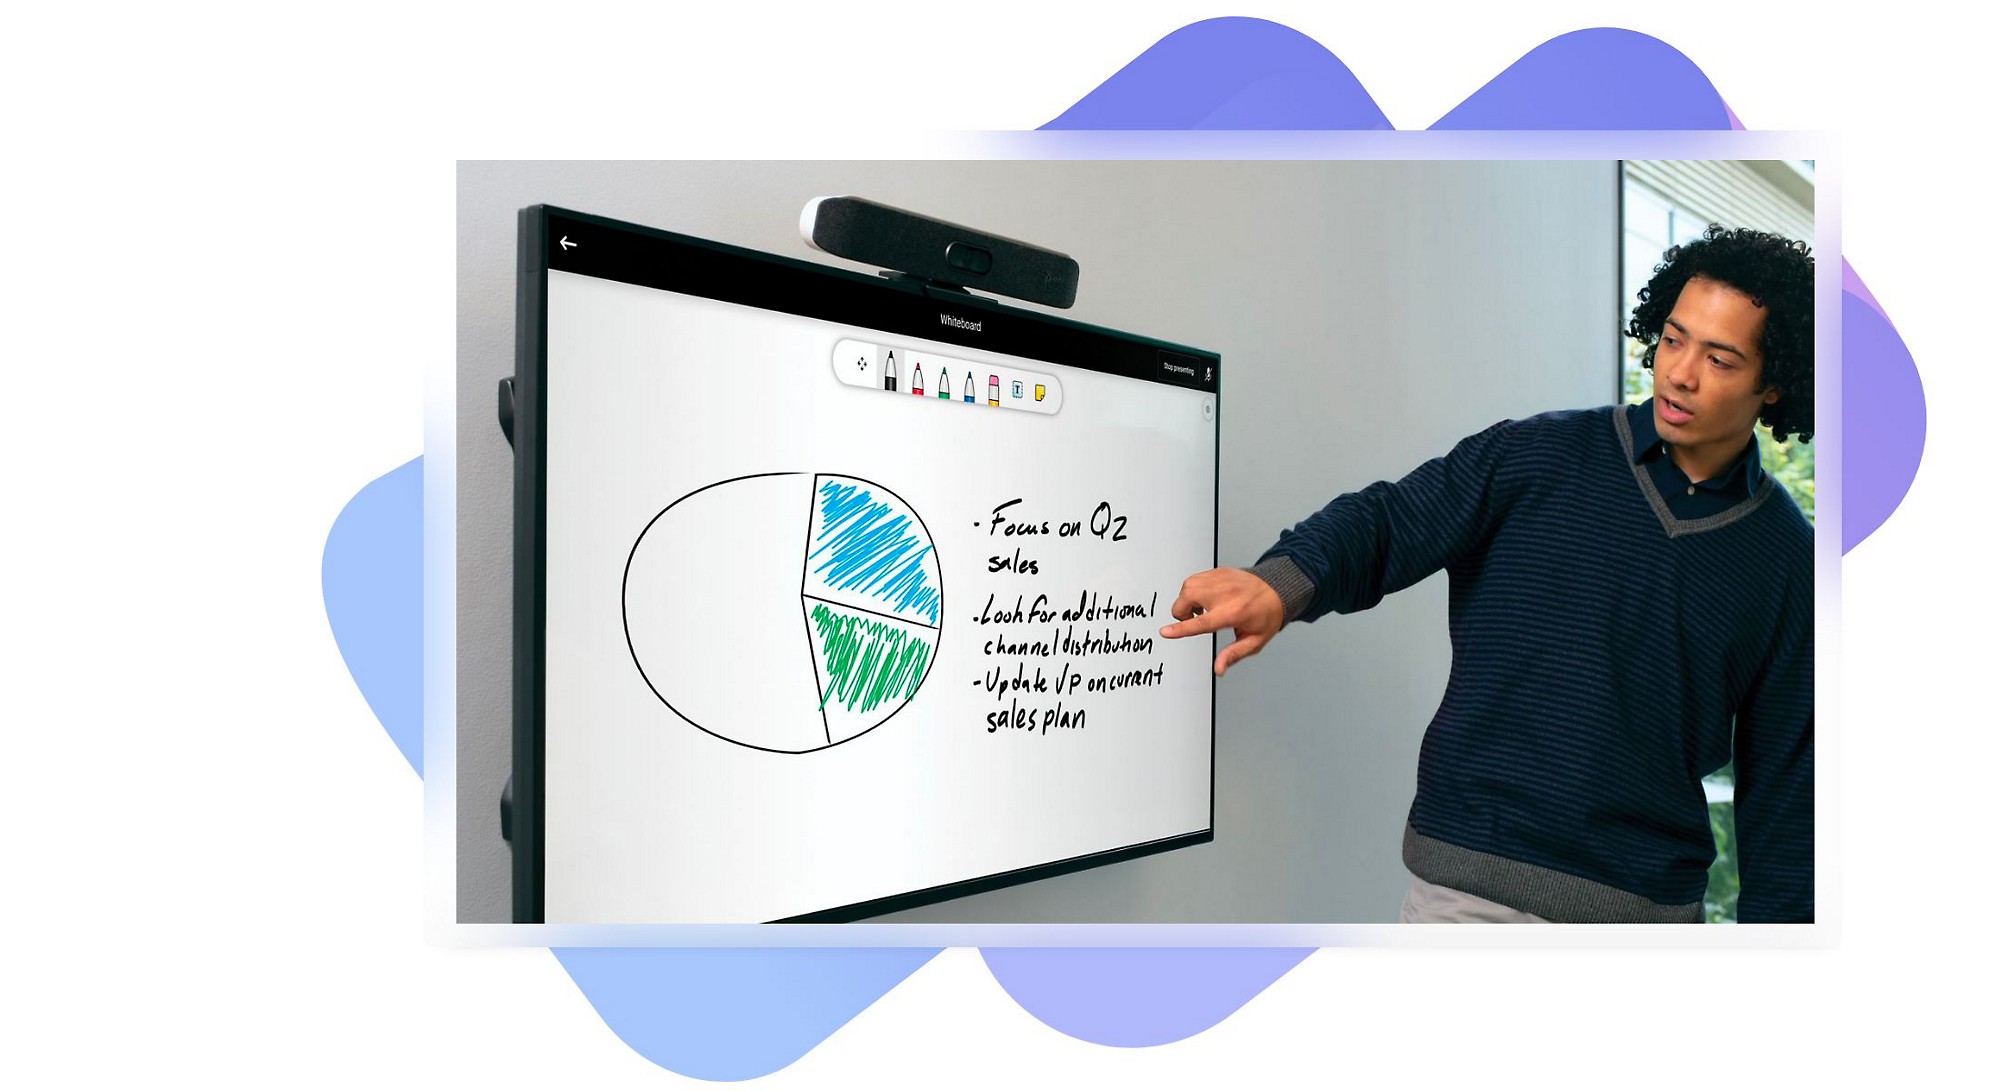 Una persona utiliza Whiteboard para presentar las notas de la reunión en un dispositivo de pantalla táctil grande.